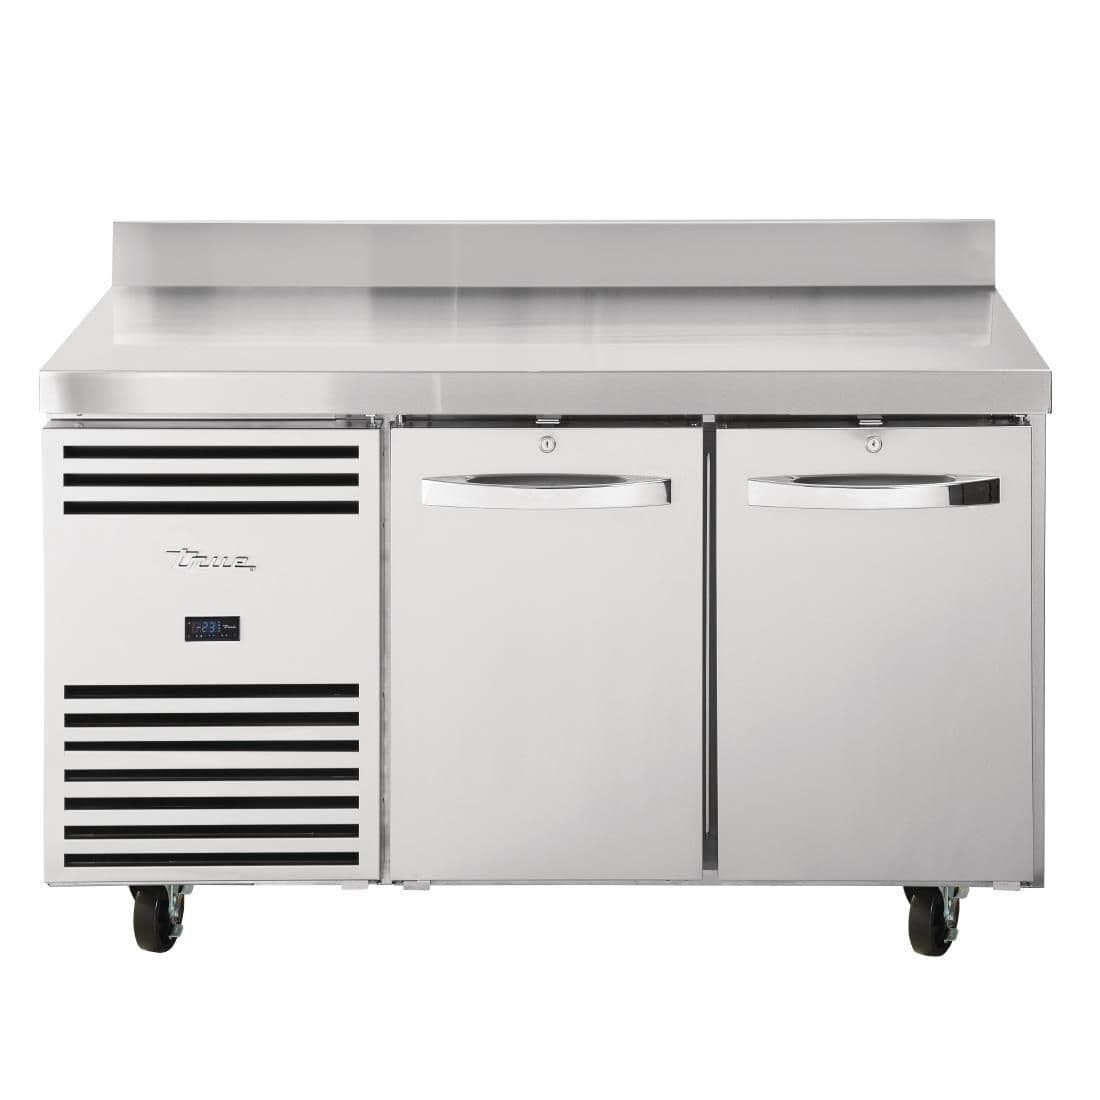 FB017 True Double Door Counter Freezer TCF1/2 JD Catering Equipment Solutions Ltd